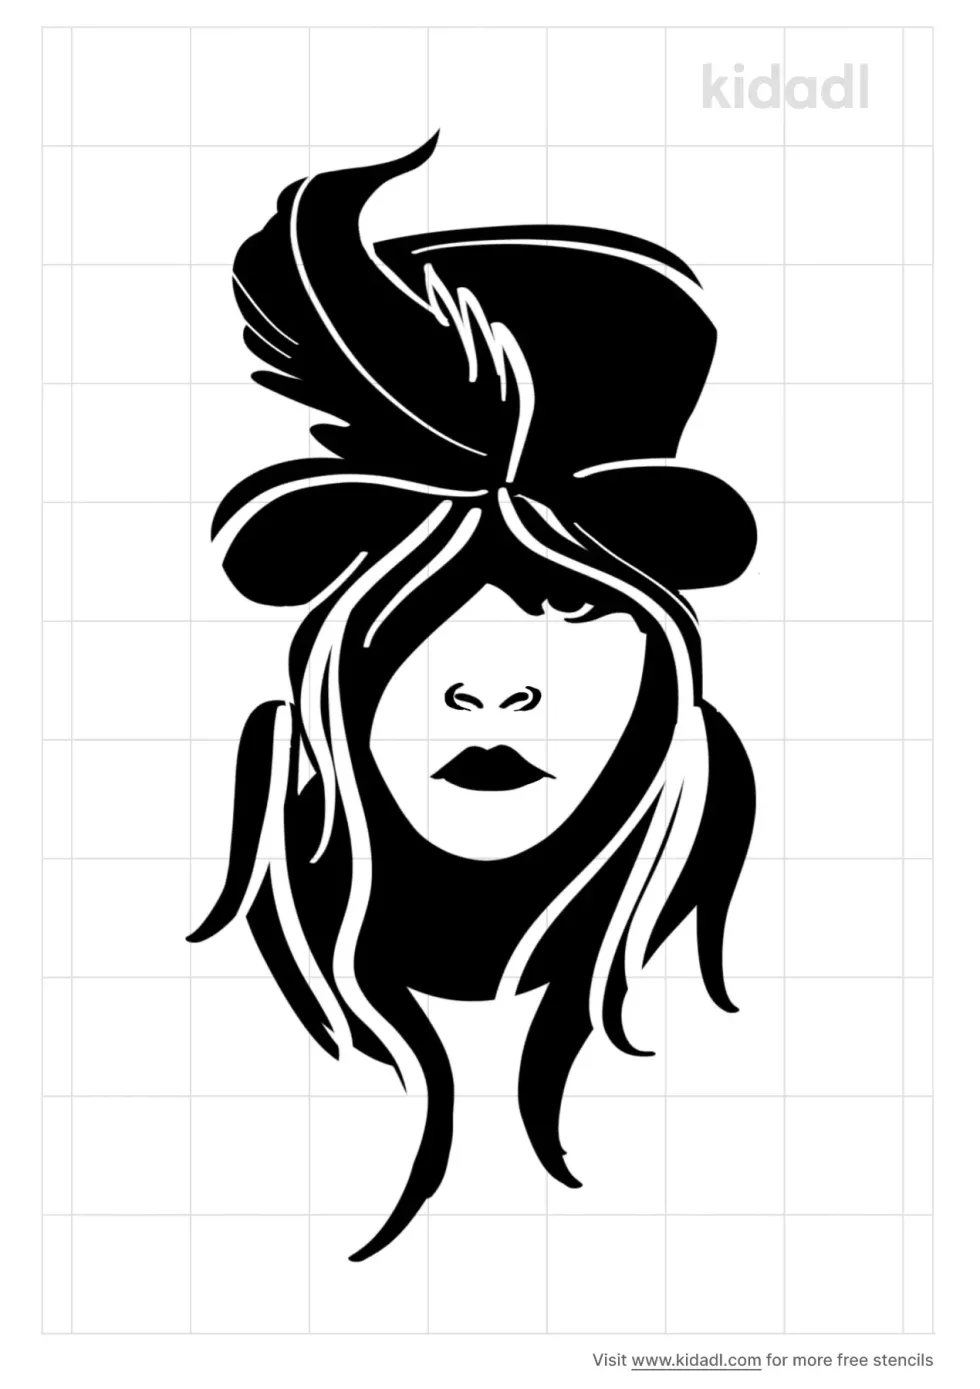 Stevie Nick's Stencil